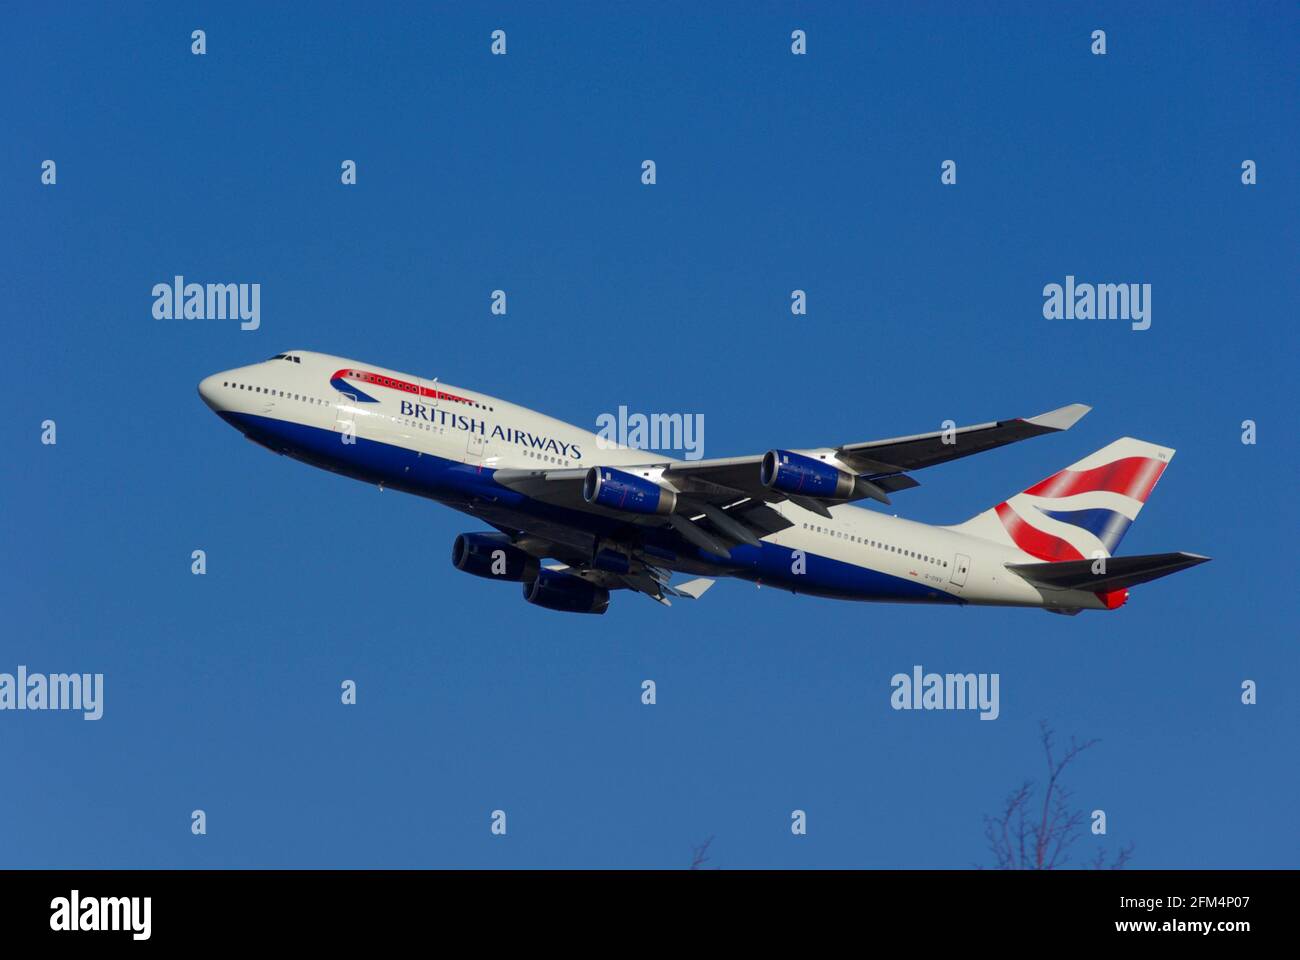 British Airways Boeing 747 Jumbo Jet das Flugzeug G-CIVV, das vom Flughafen London Heathrow, Großbritannien, in klarem blauen Himmel abfliegt Stockfoto